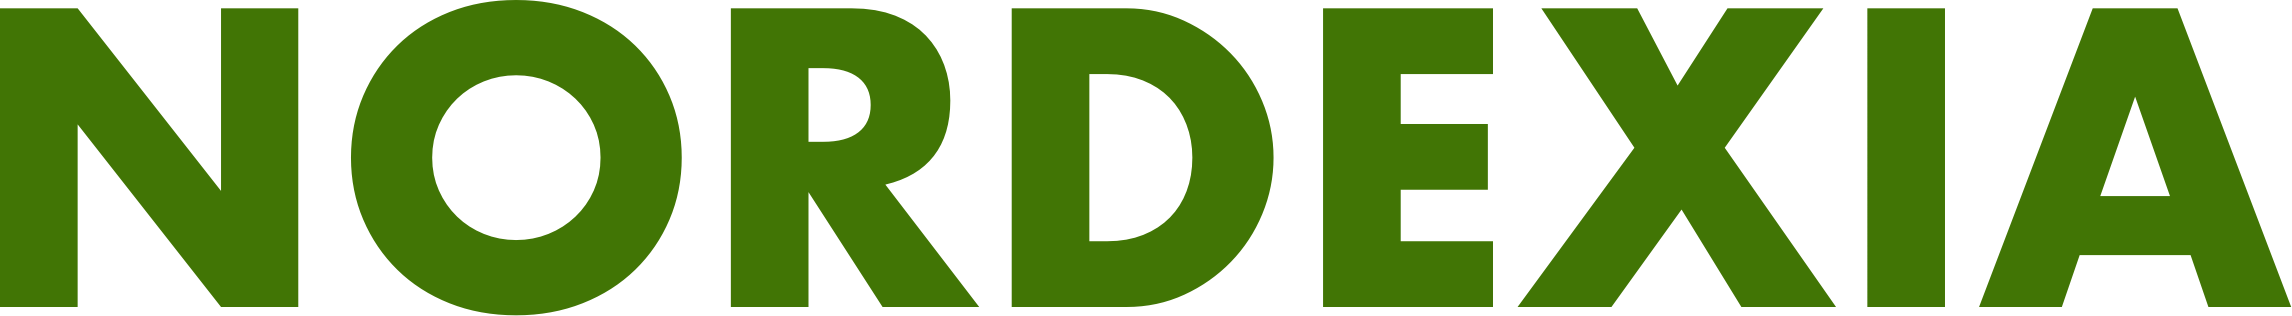 logo_nordexia_text_green.png